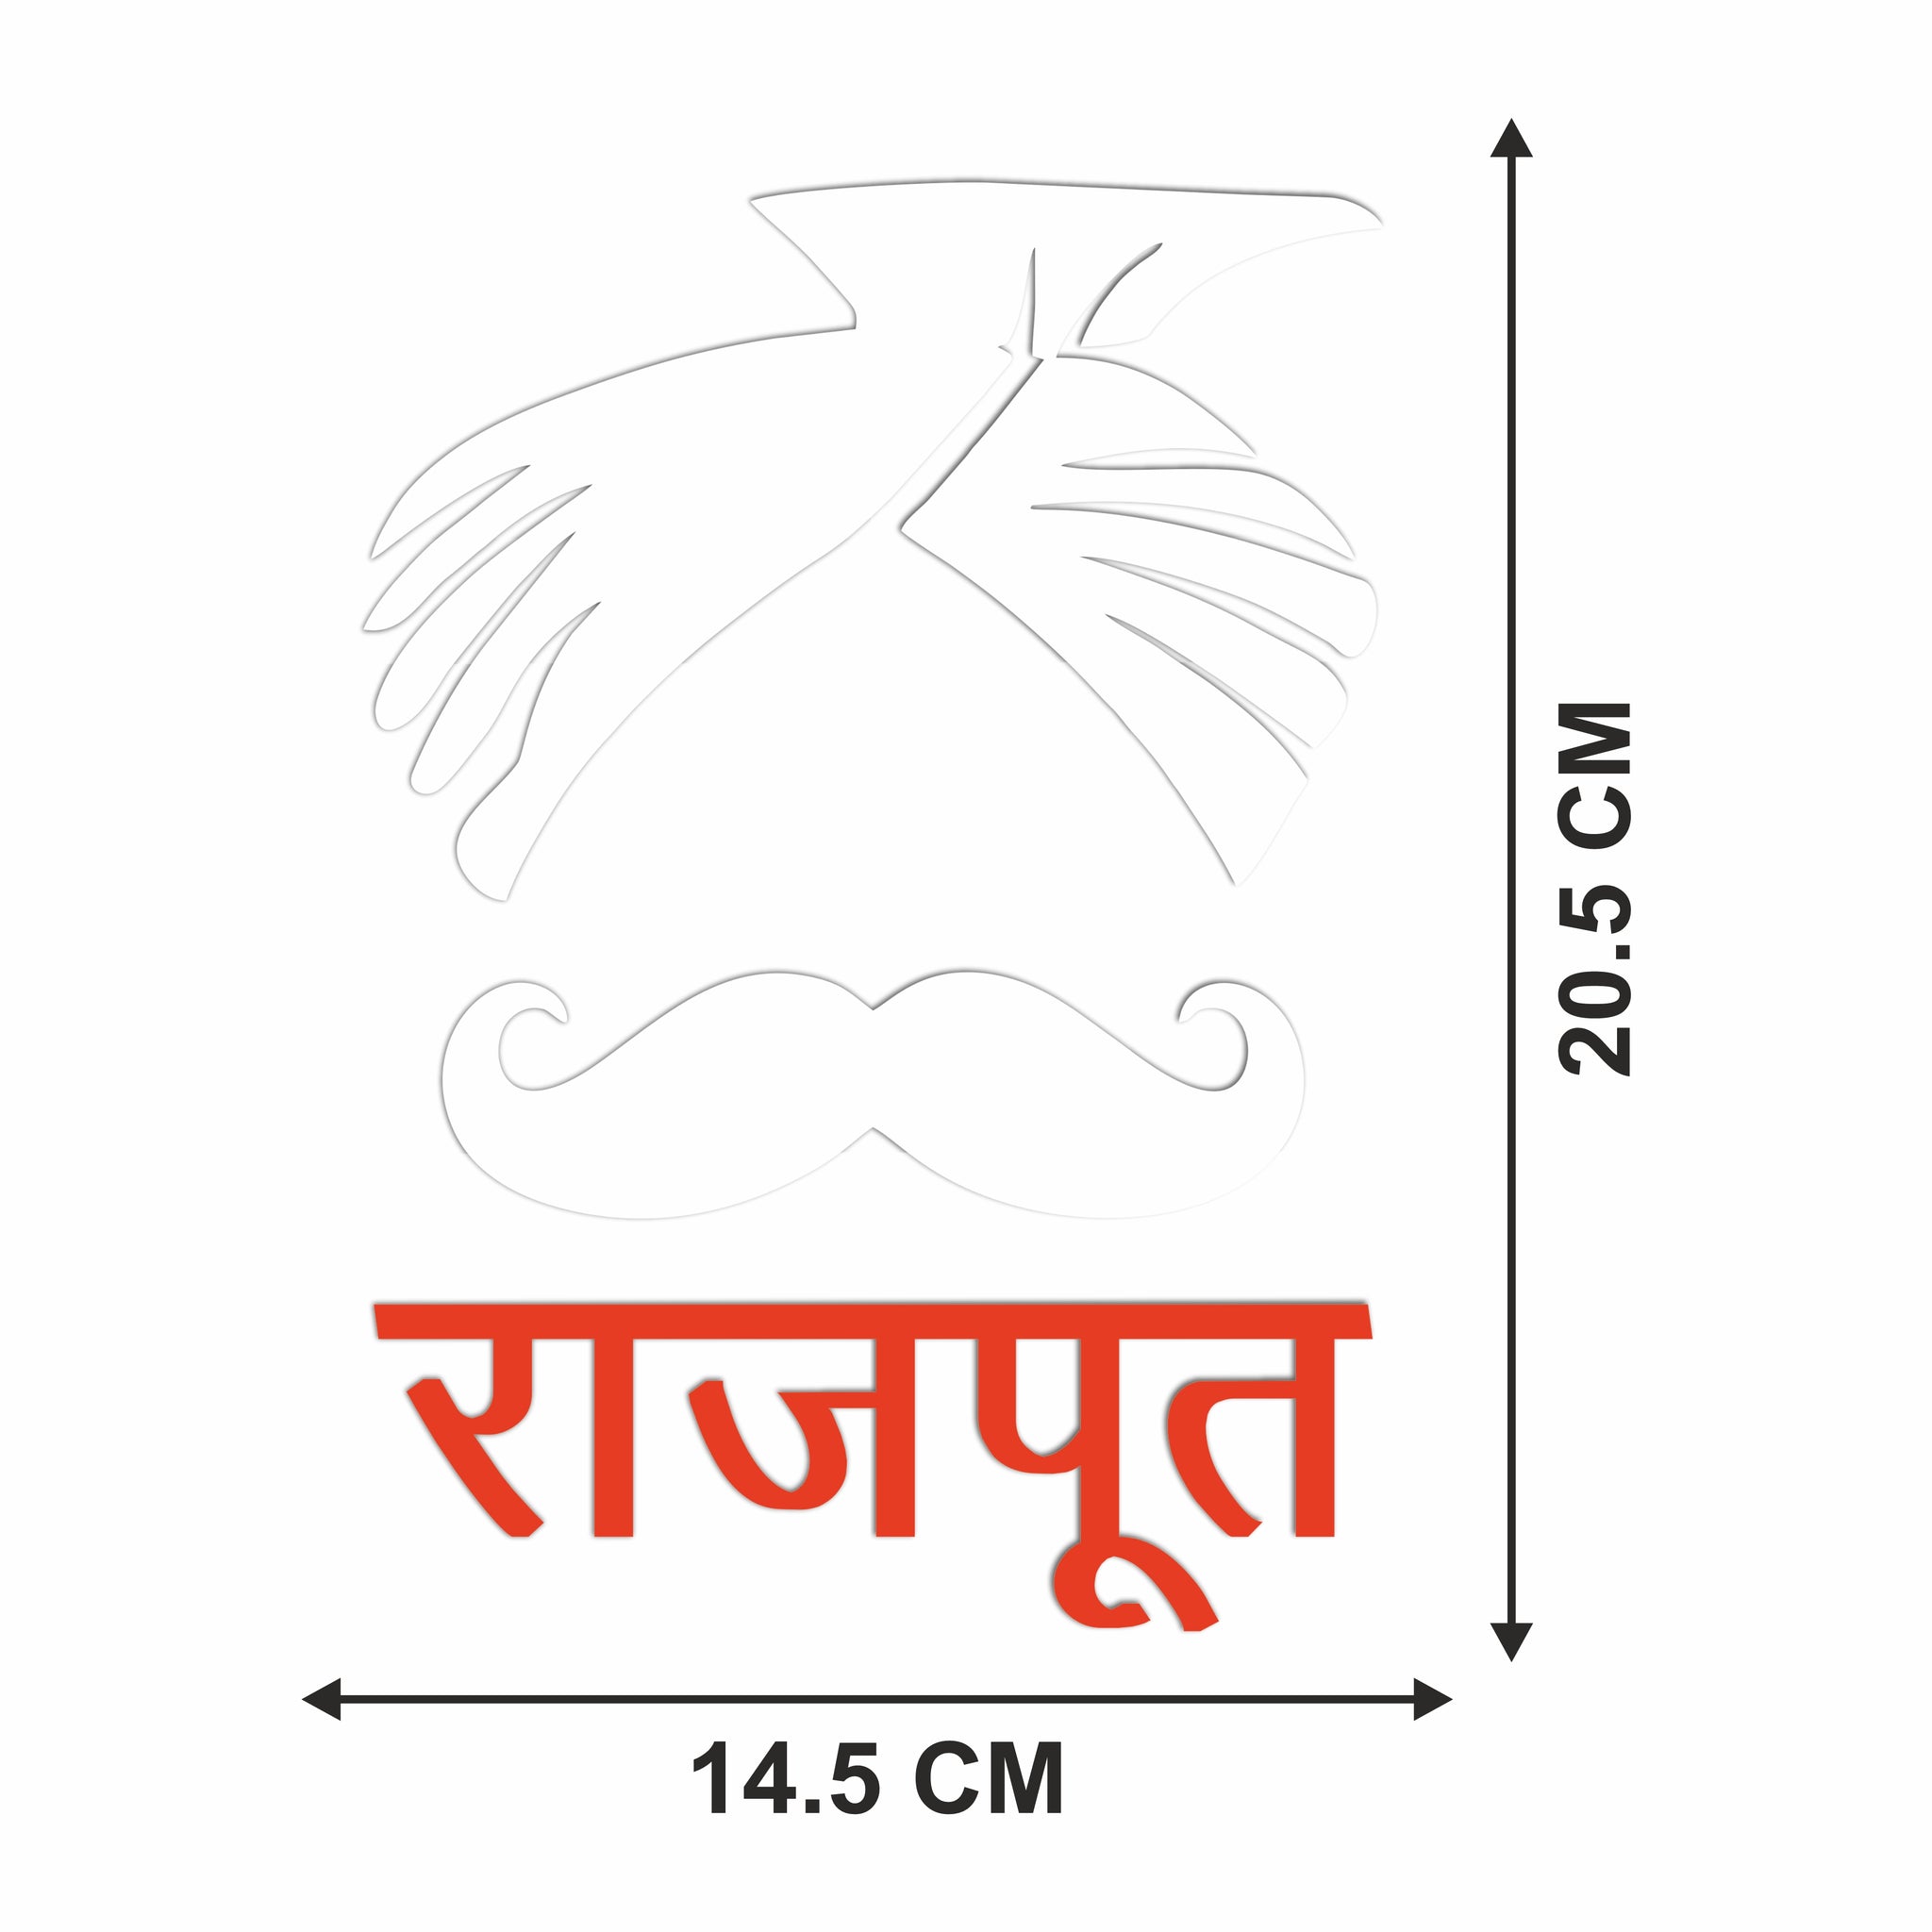 Rajput boy vector mascot logo template